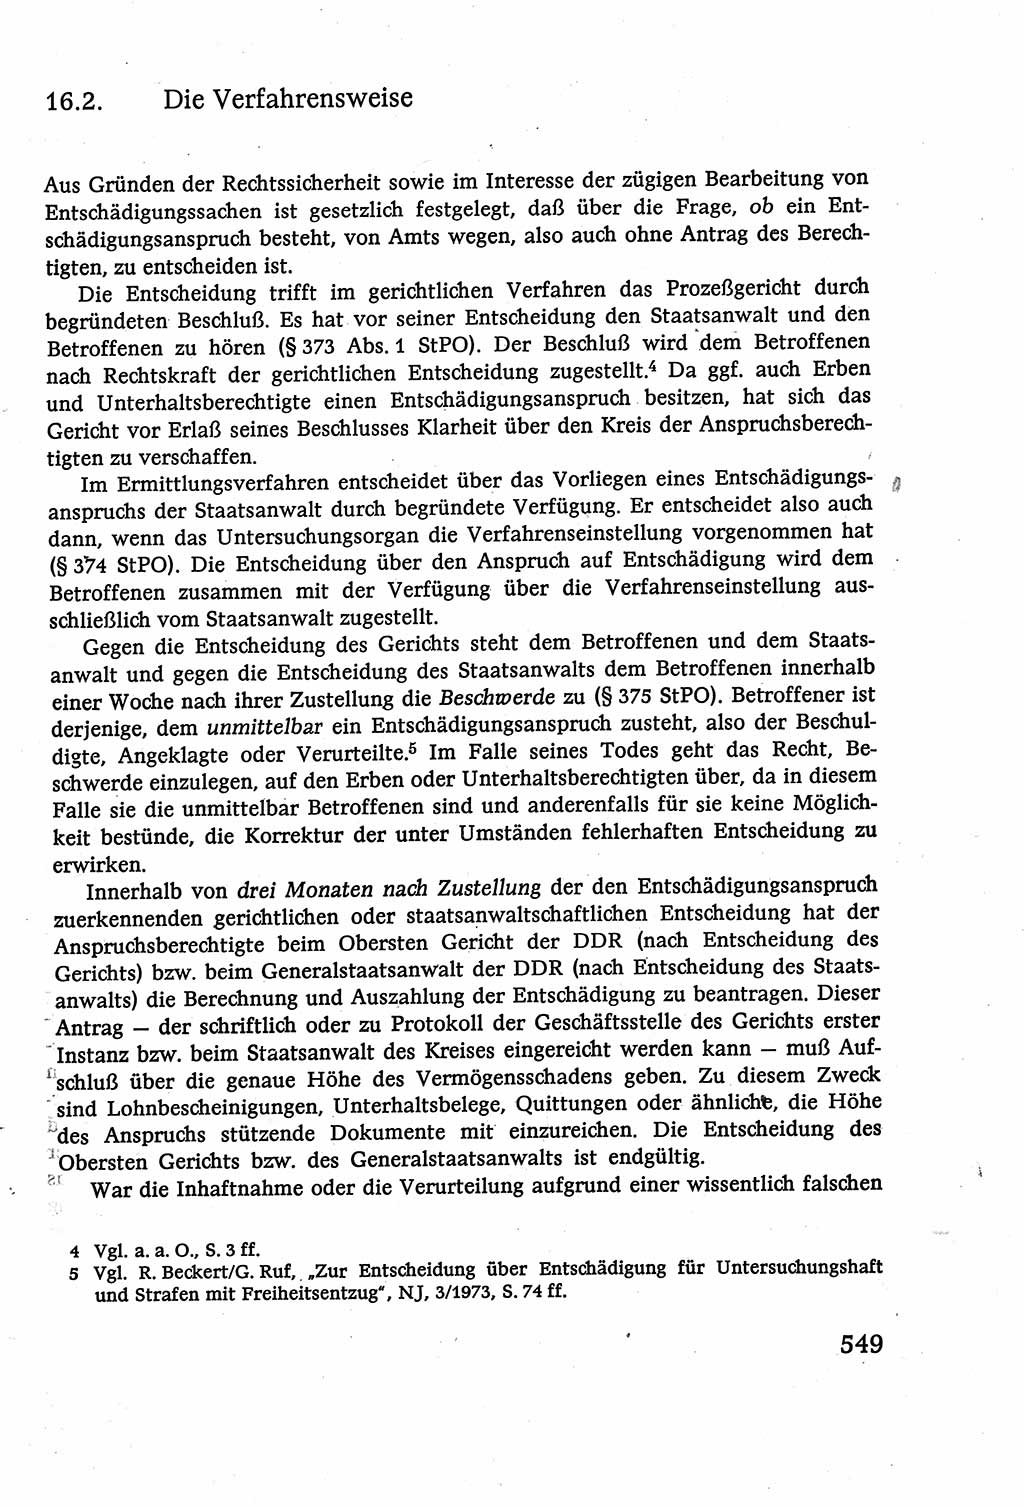 Strafverfahrensrecht [Deutsche Demokratische Republik (DDR)], Lehrbuch 1977, Seite 549 (Strafverf.-R. DDR Lb. 1977, S. 549)